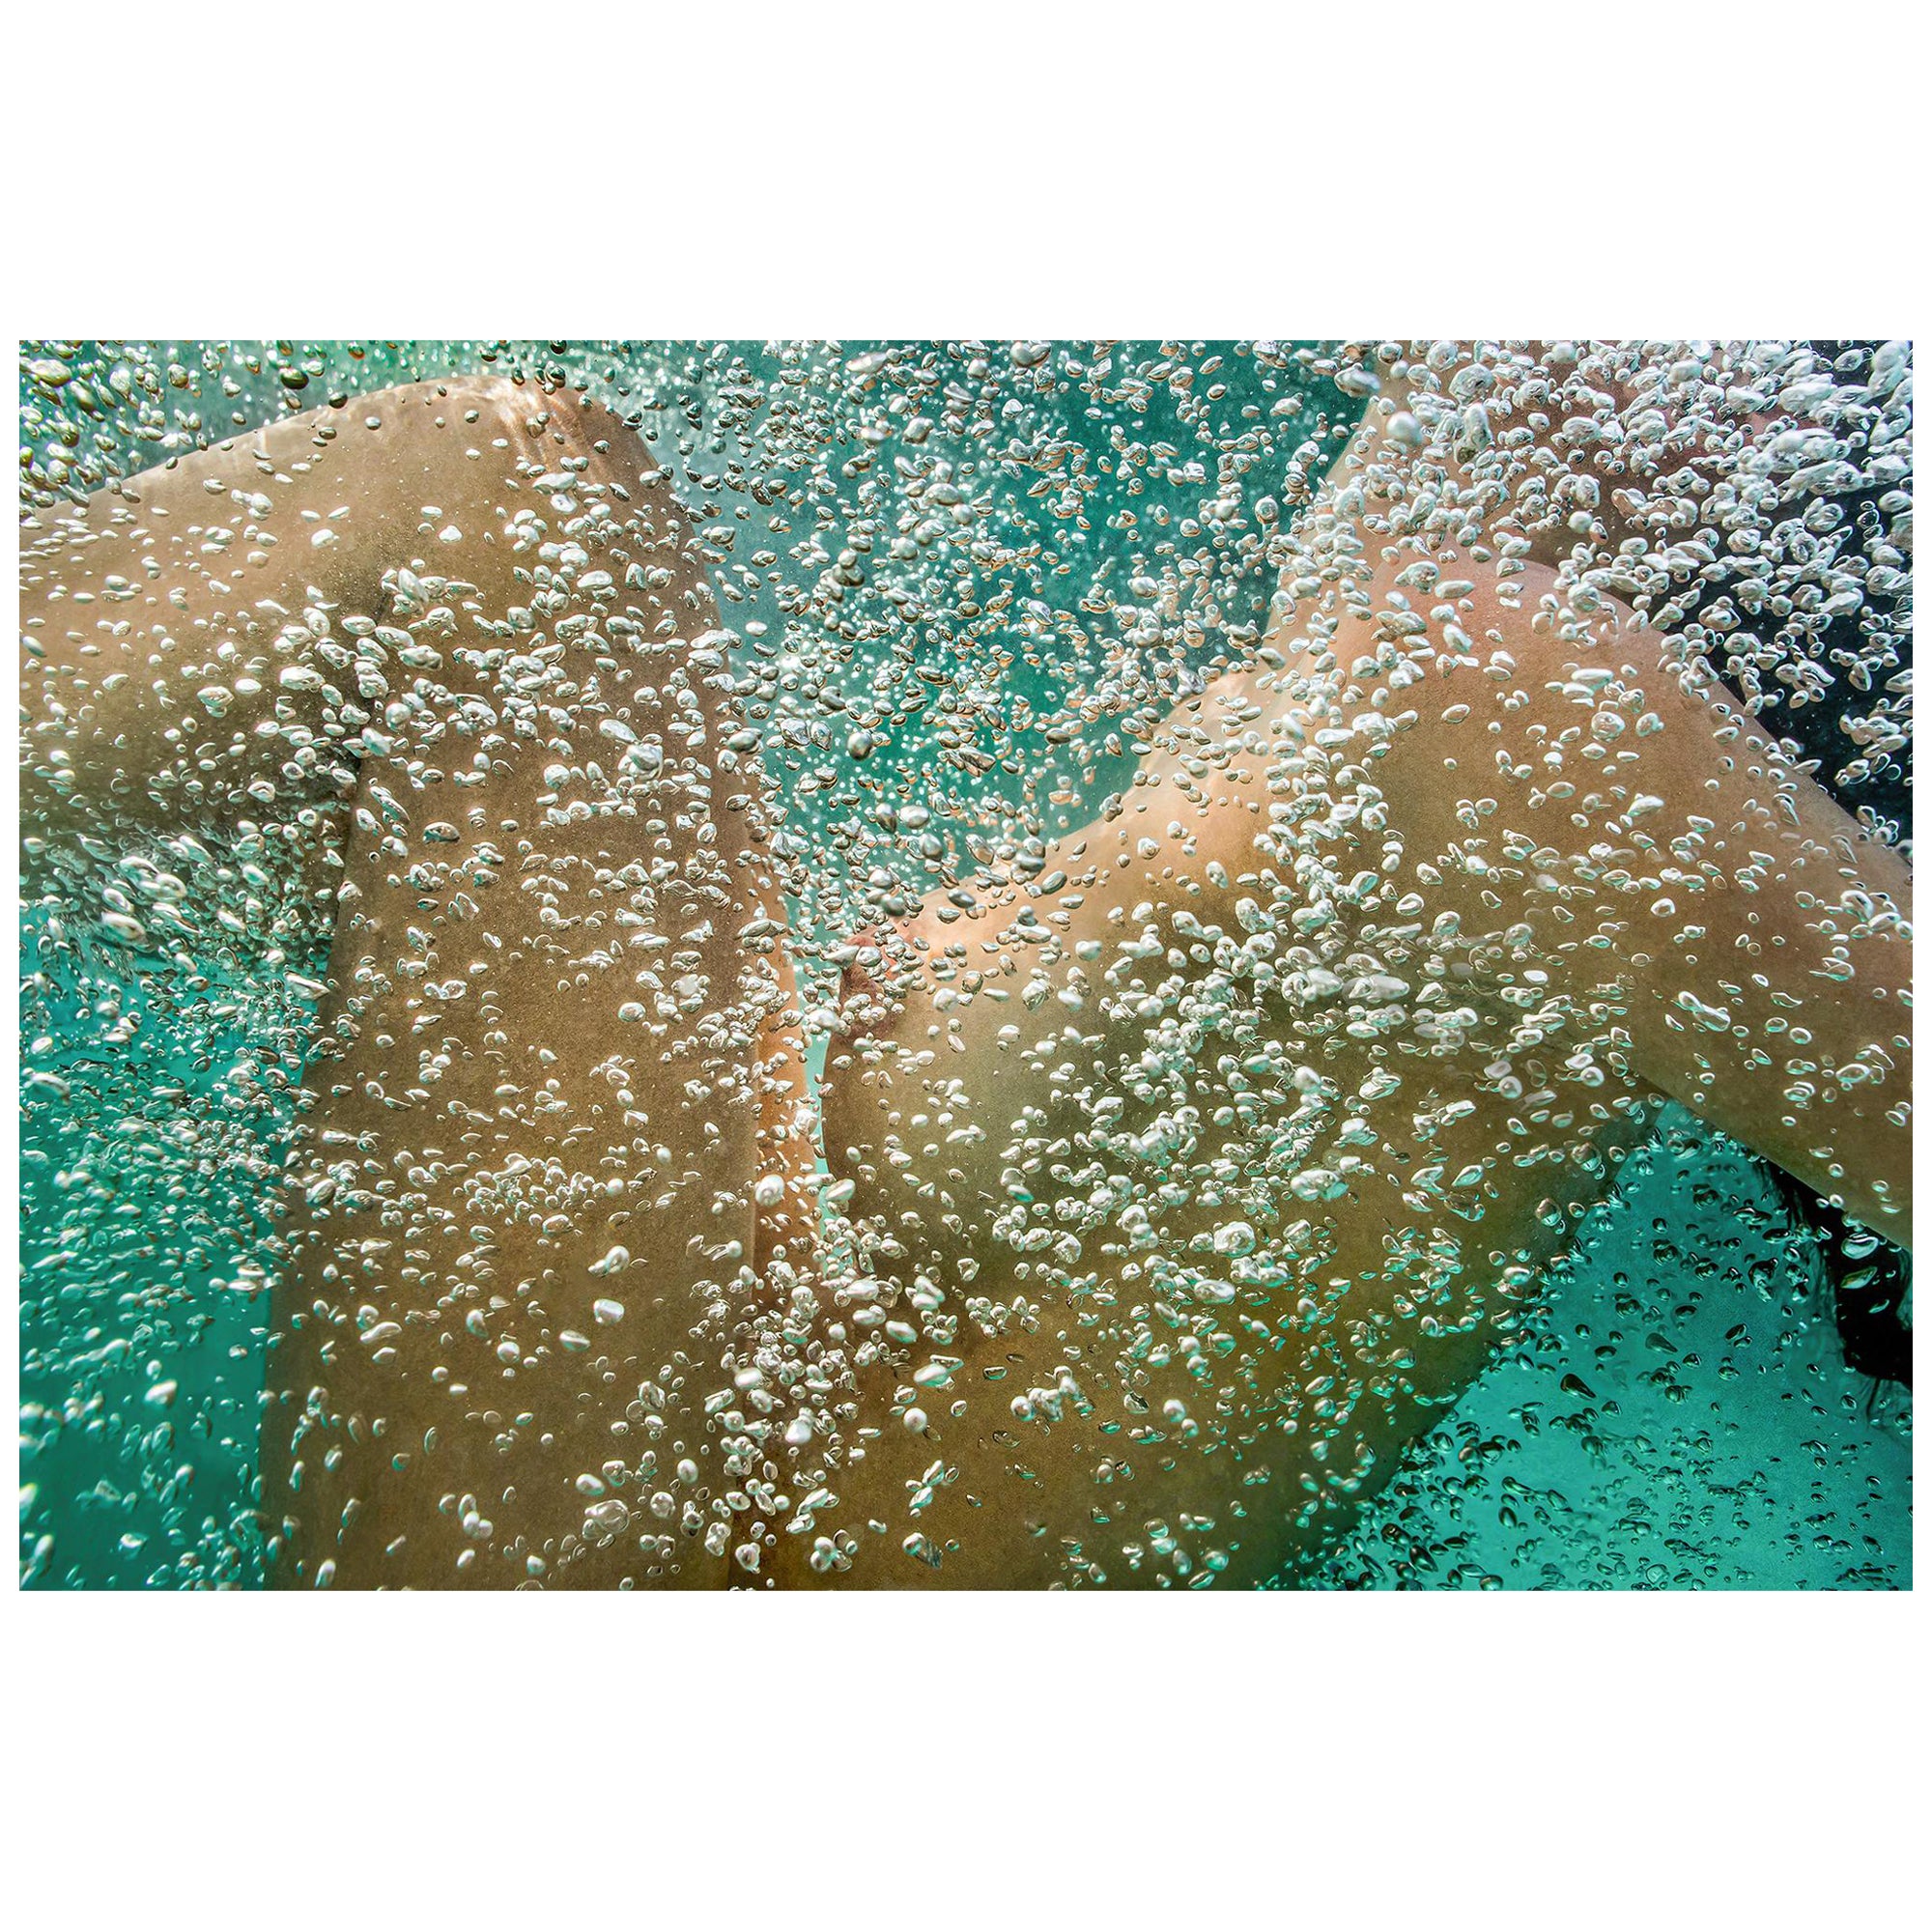 Alex Sher Nude Photograph – Unterwasser-Nacktfotografie – Pigment im Archiv 23x35"